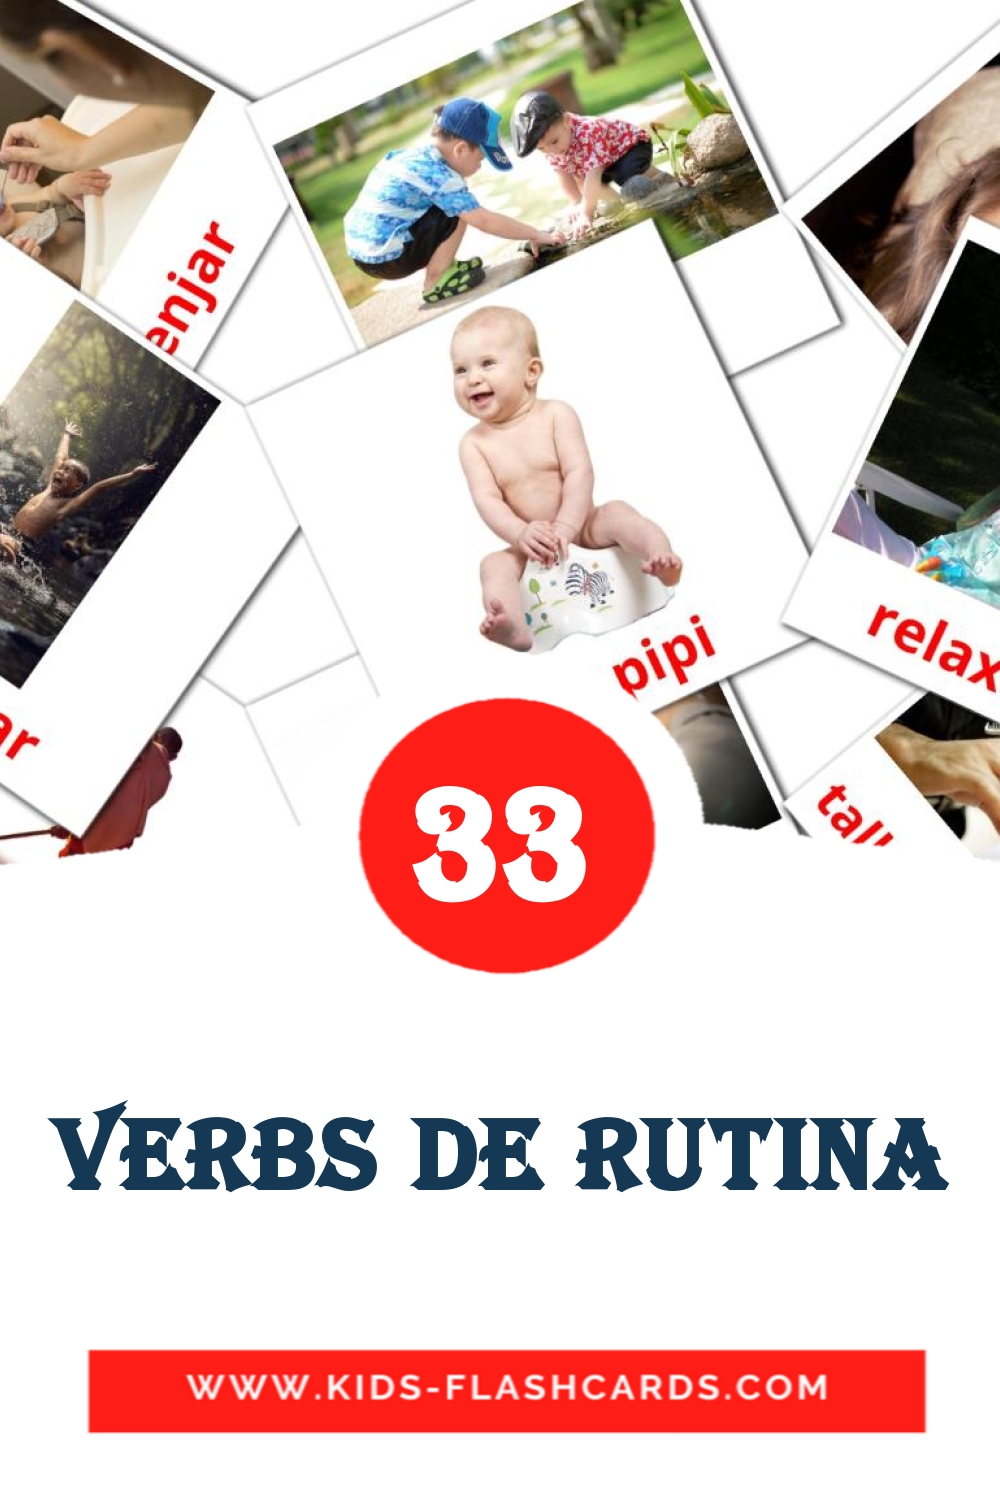 33 tarjetas didacticas de Verbs de rutina para el jardín de infancia en catalán